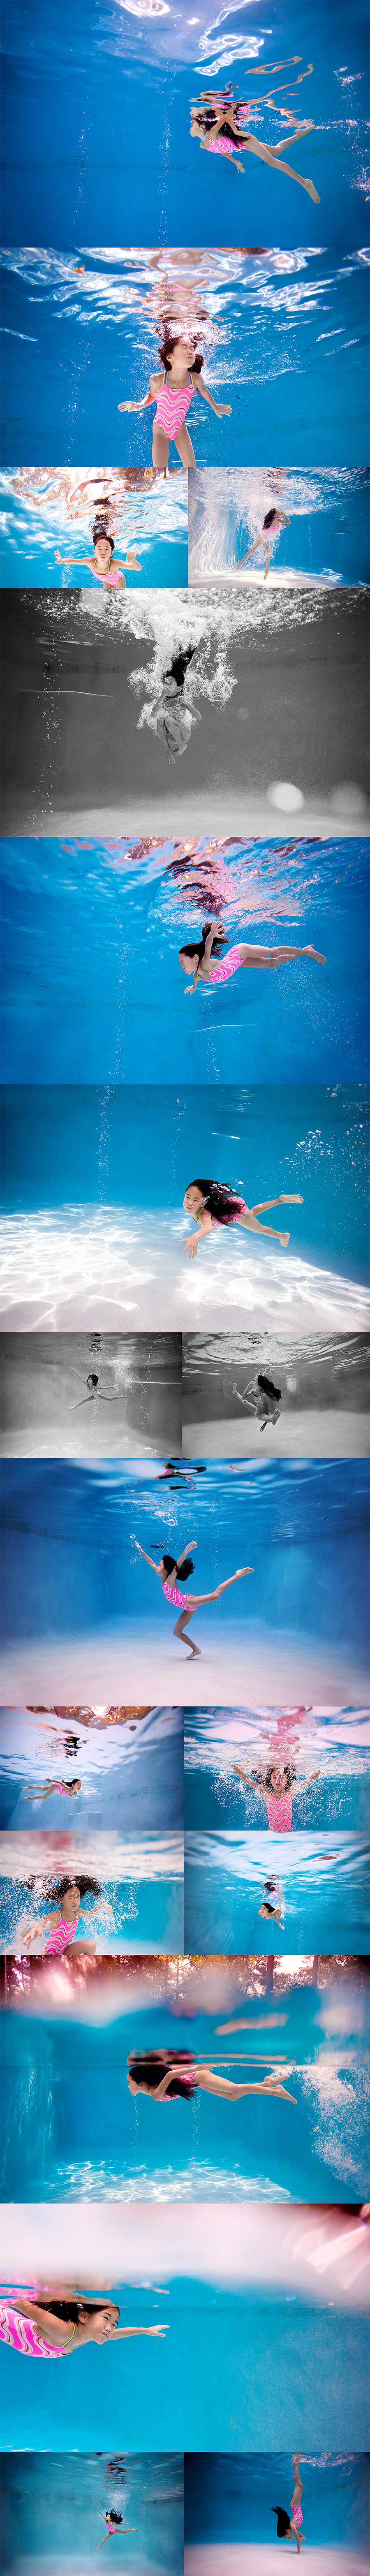 Underwater Child Photography Woodlands TX